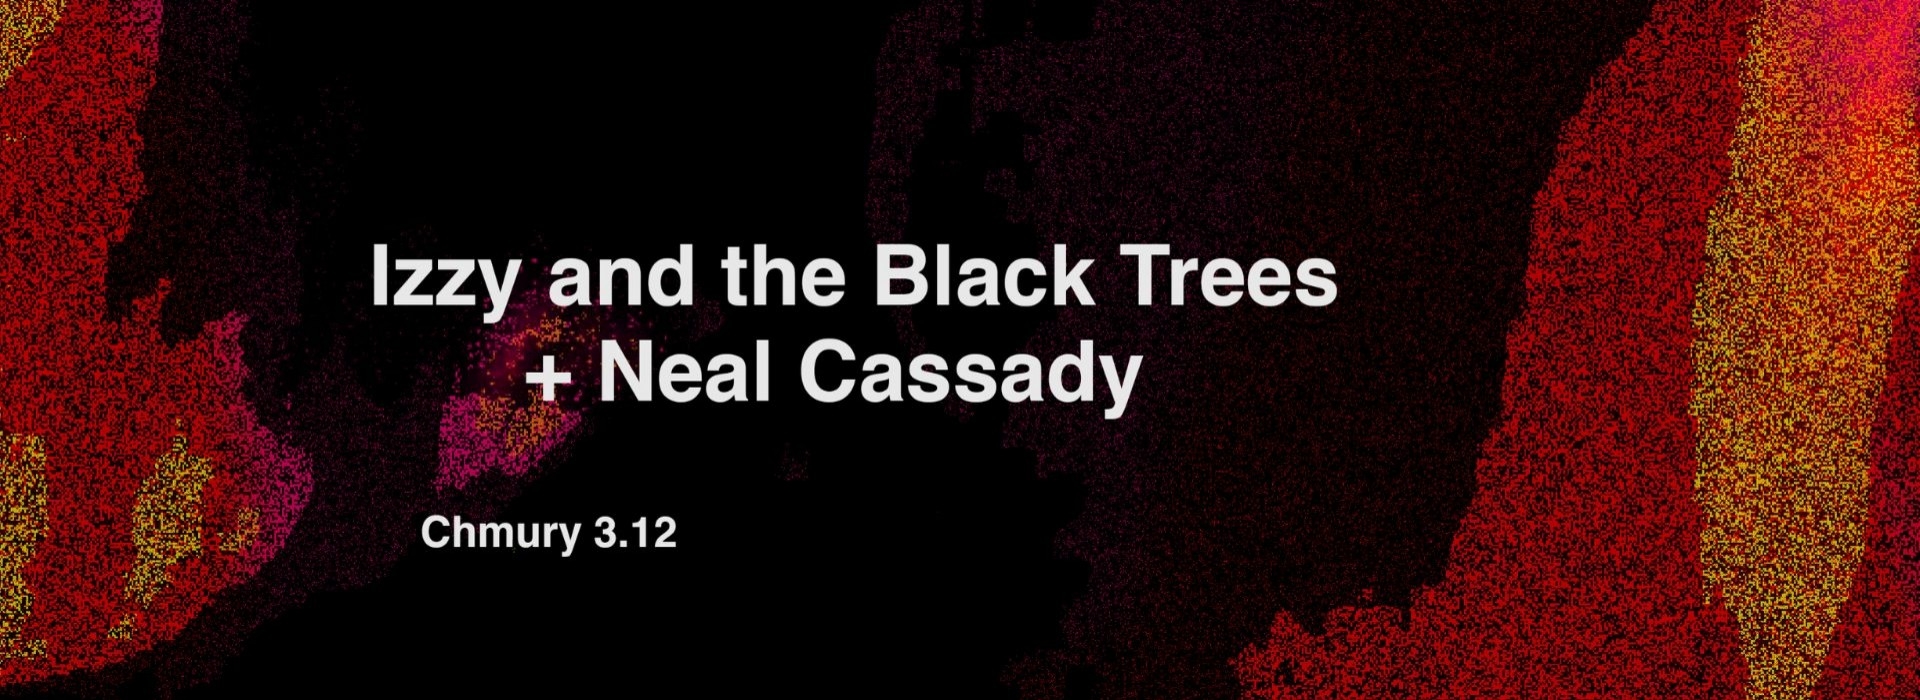 Podwójne zaprosznie na koncert Izzy and the Black Trees + Neal Cassady!